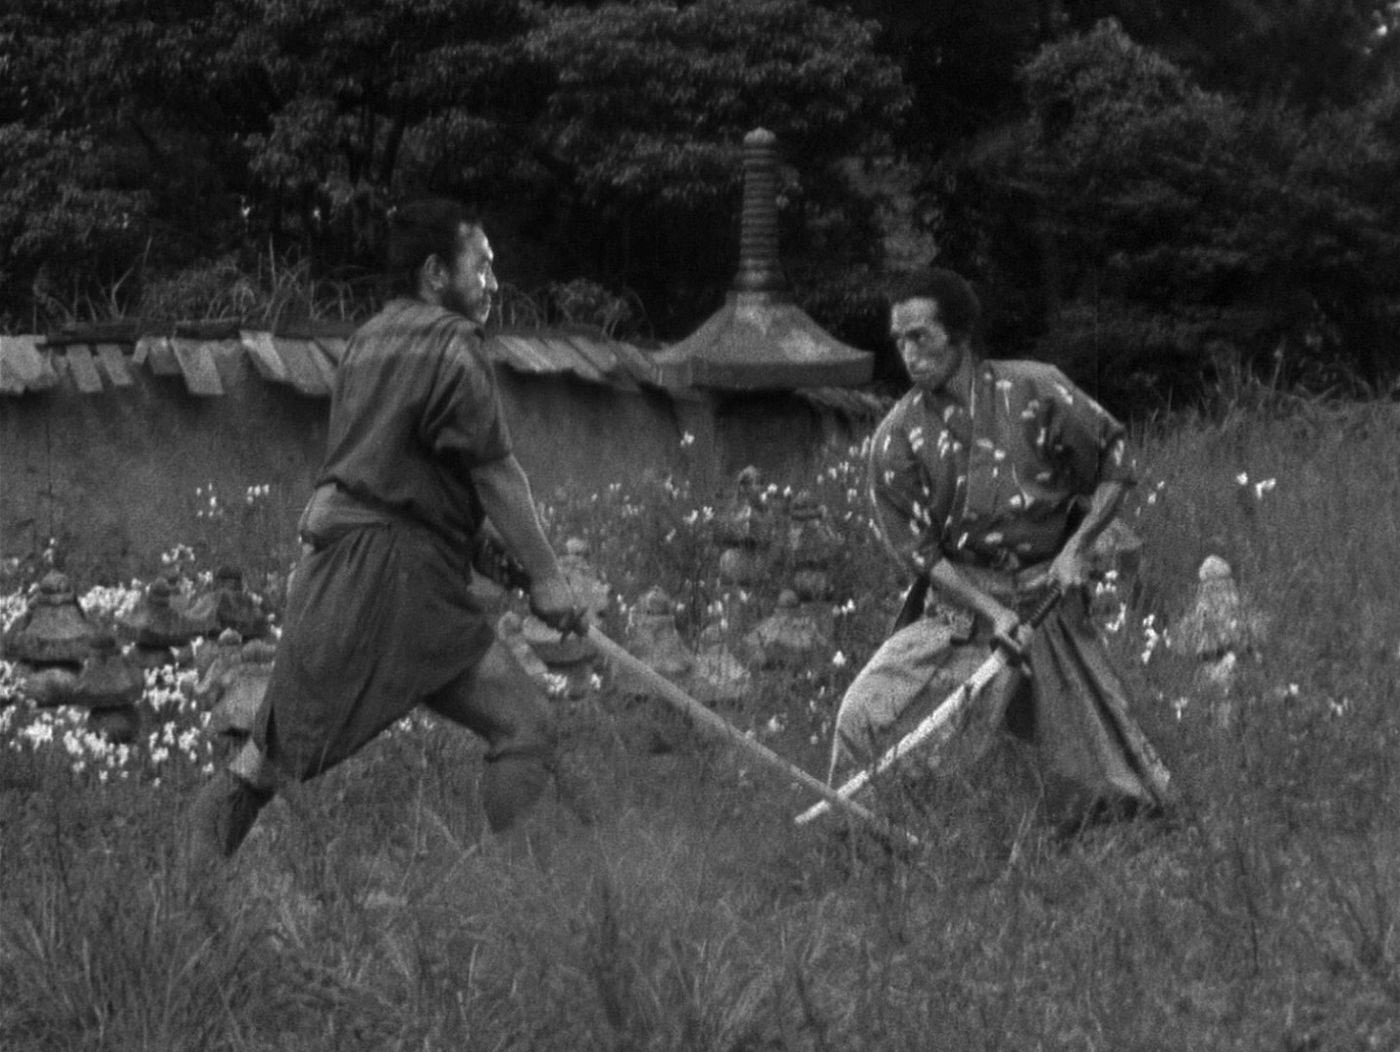 مبارزه سامورایی ها در فیلم هفت سامورایی آکیرا کوروساوا